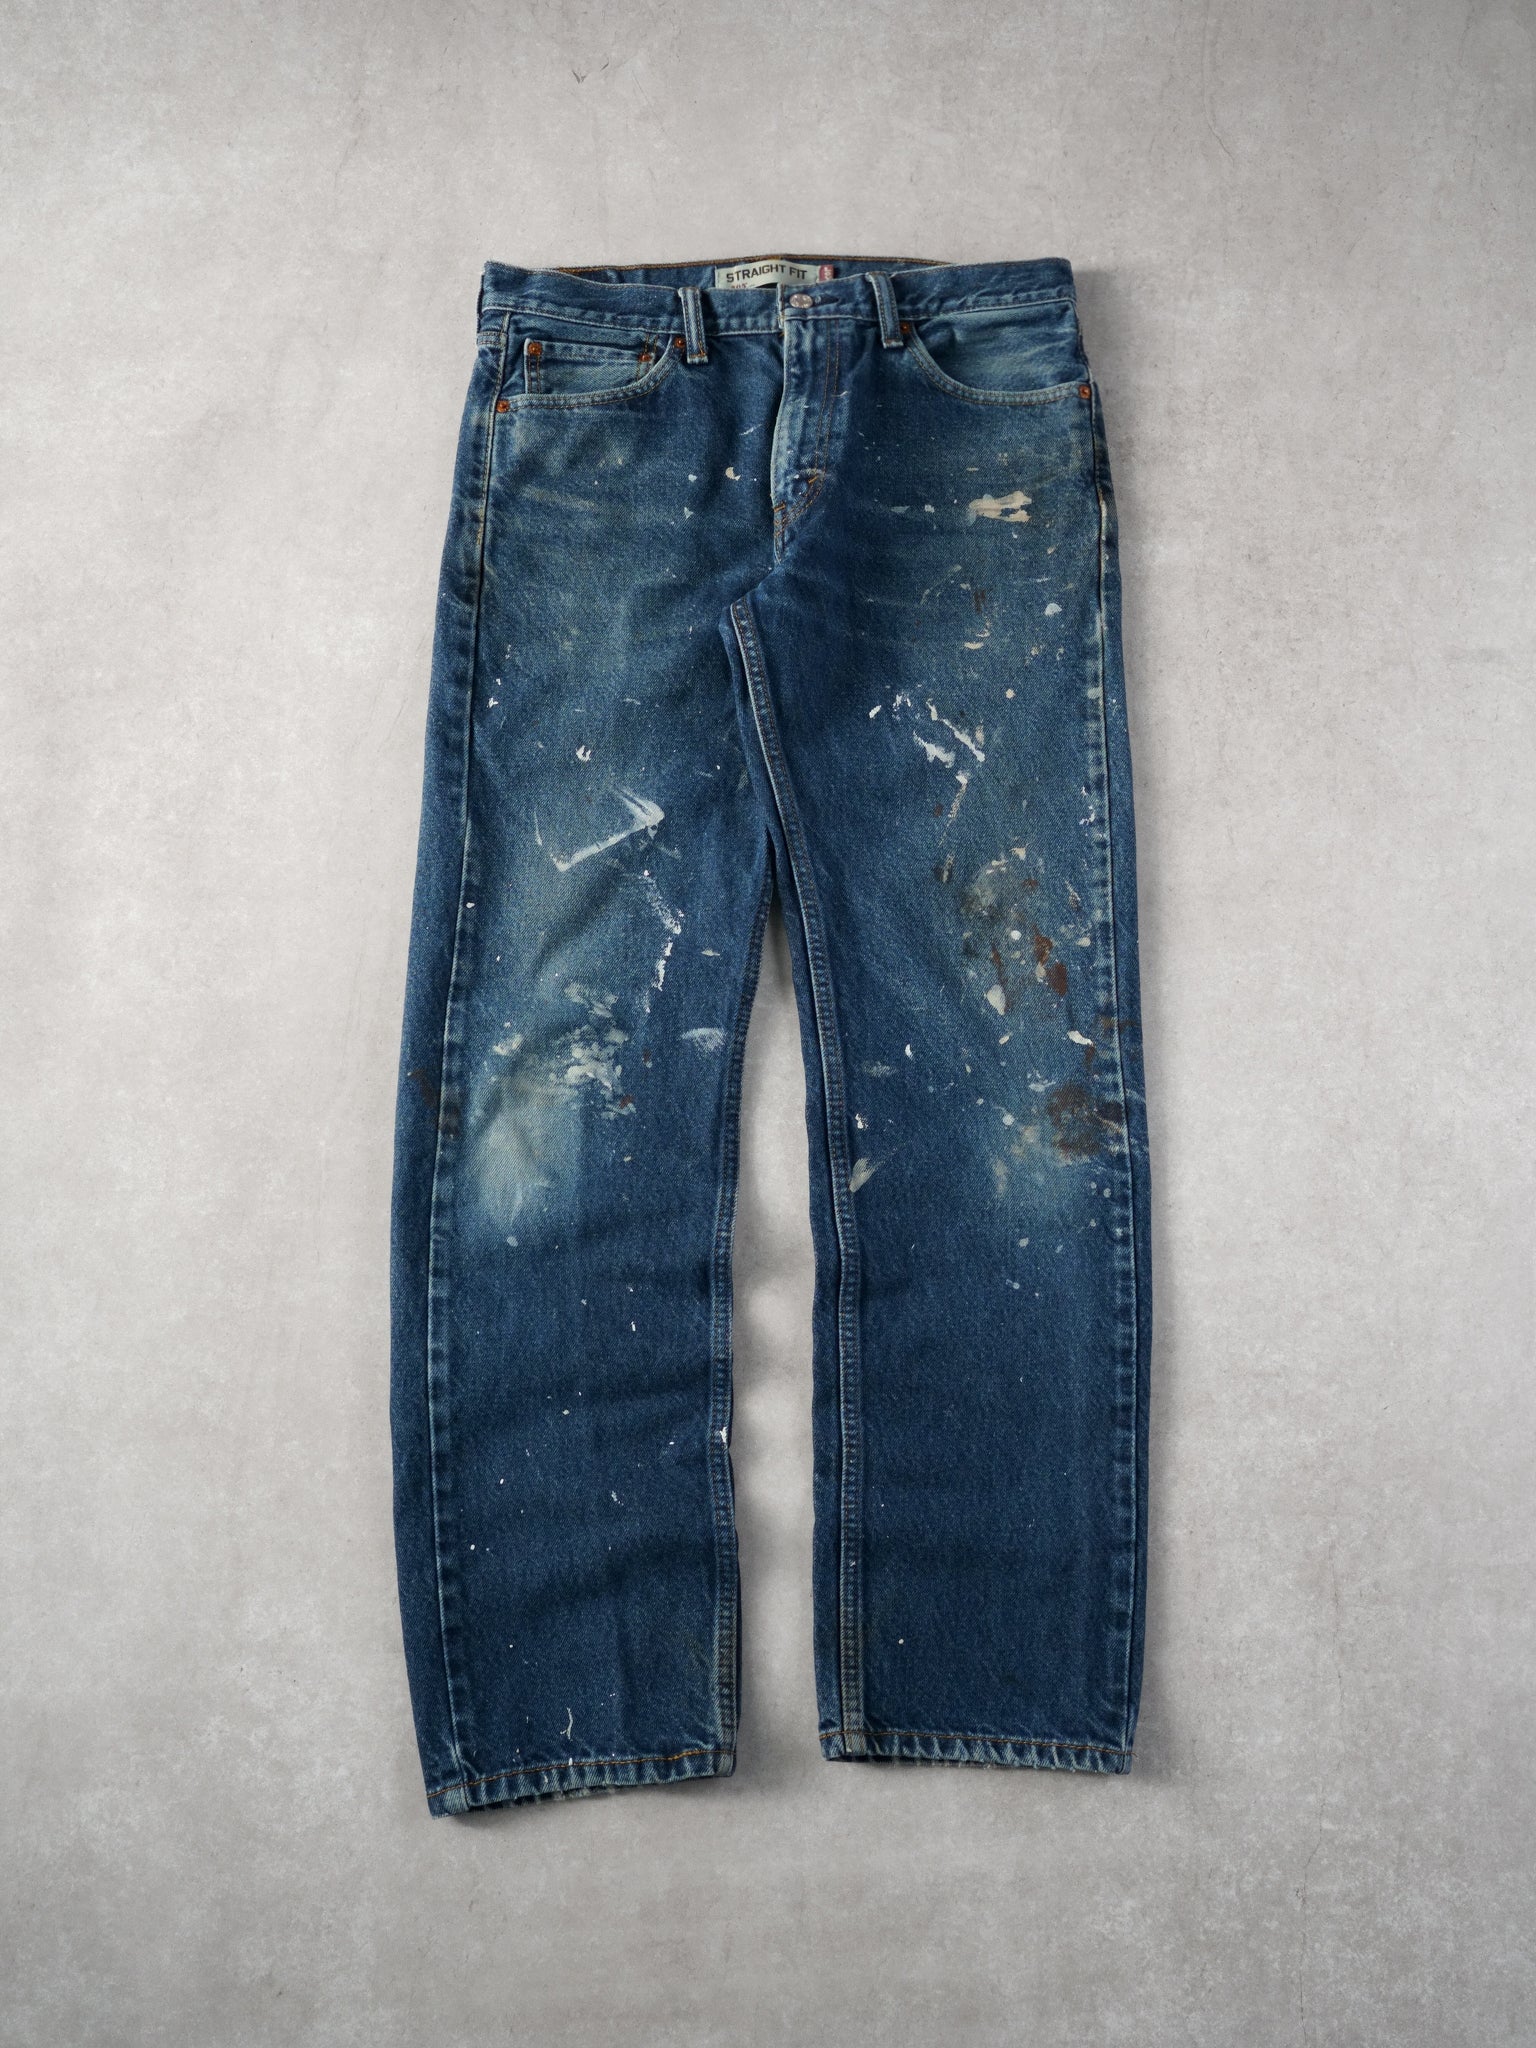 Vintage 90s Blue Levi's 505 Denim Jeans (33x32)